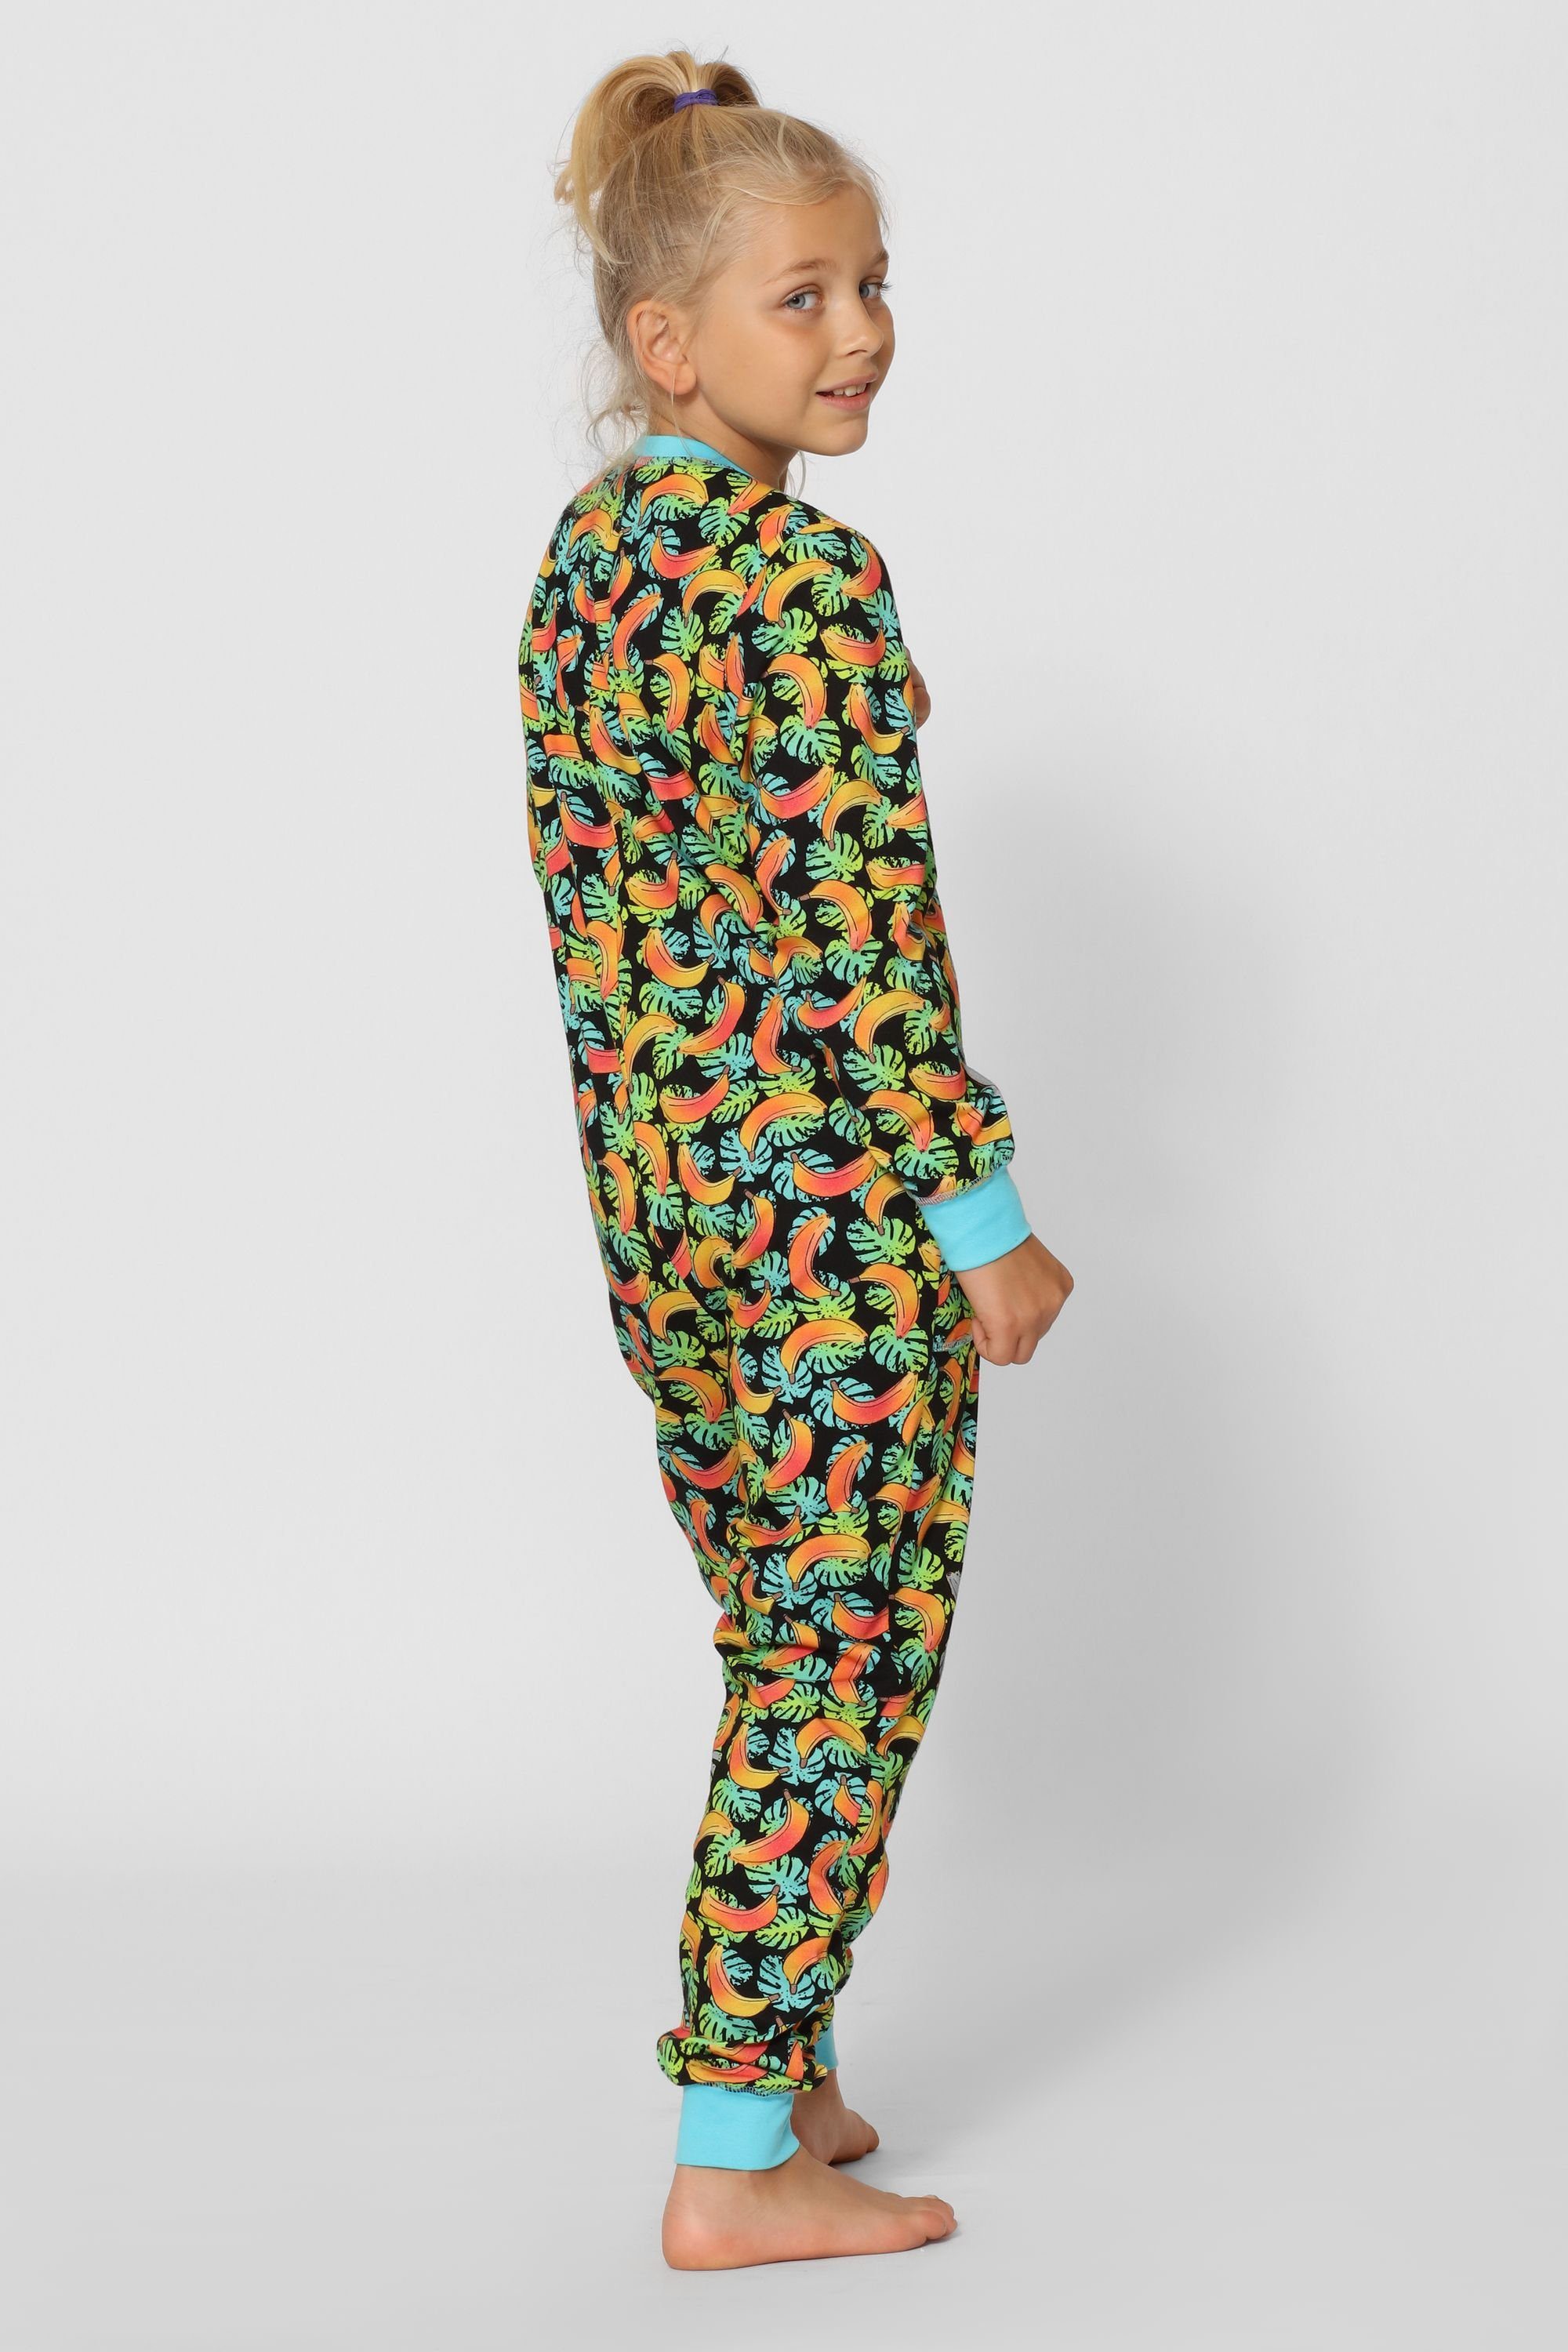 Bananen Mädchen Schlafanzug Merry Türkis Jumpsuit Schlafanzug Style MS10-186